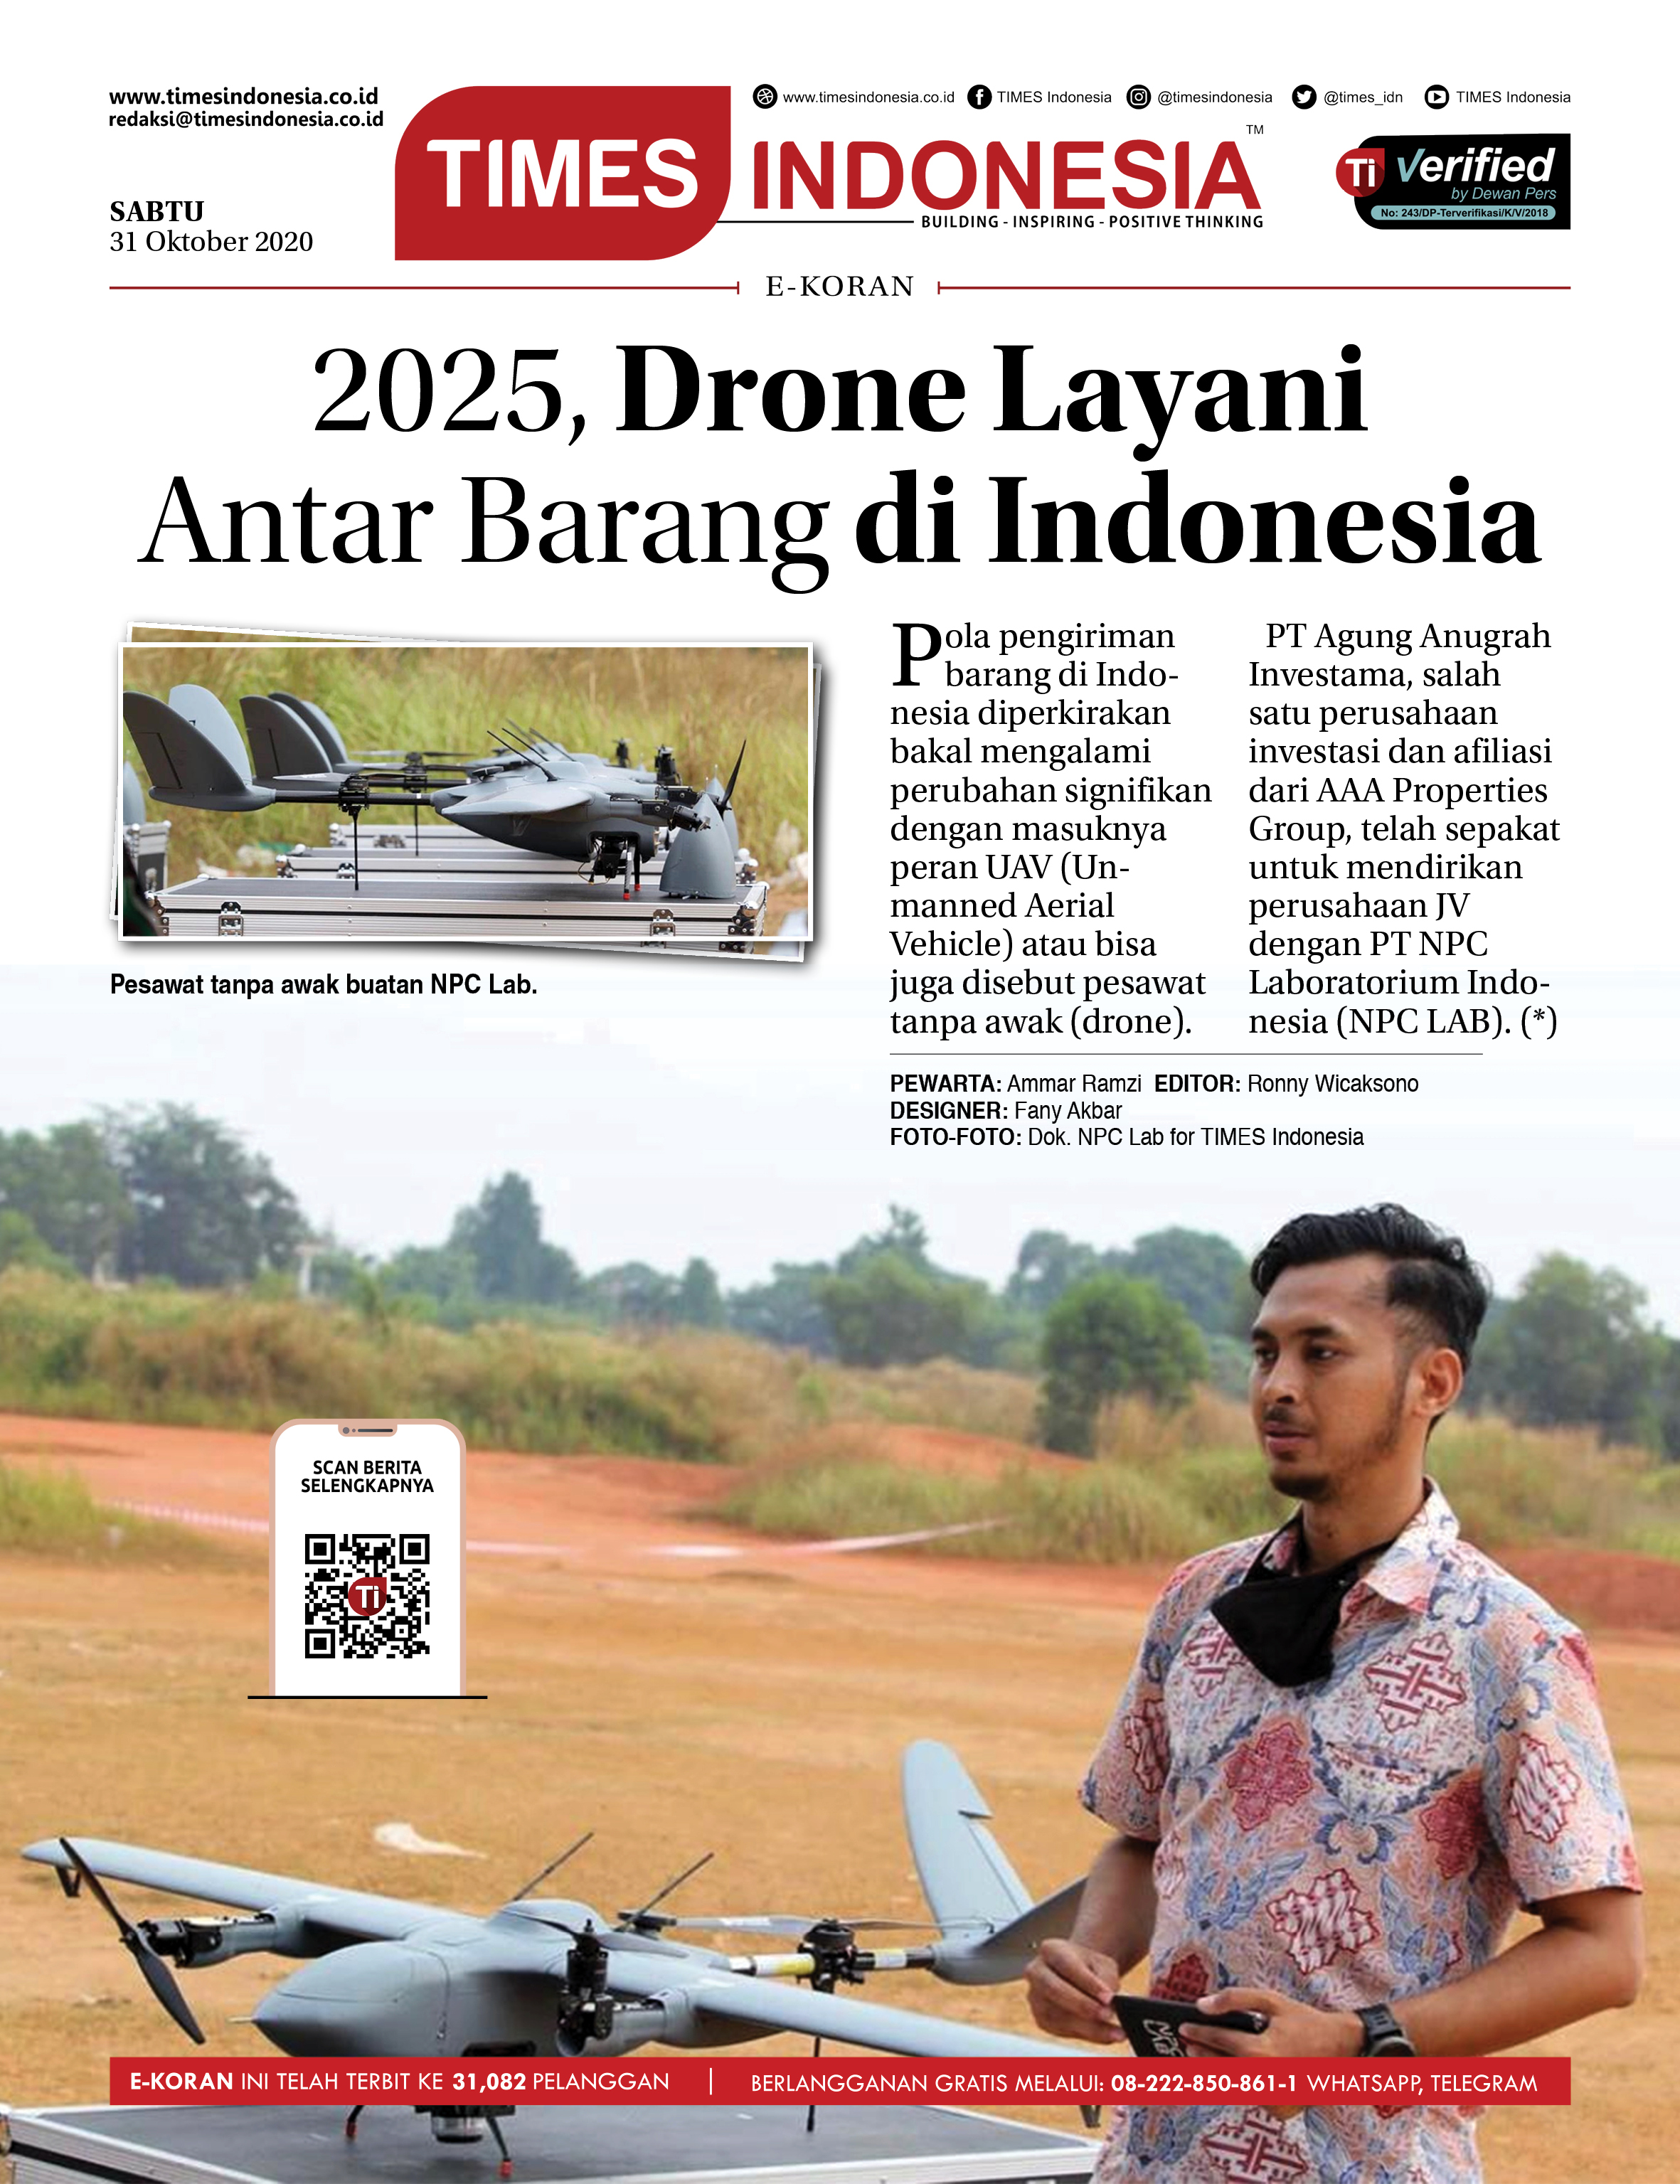 Ekoran-31-10-2020-2025-Drone-Layani-Antar-Barang-di-Indonesia.jpg